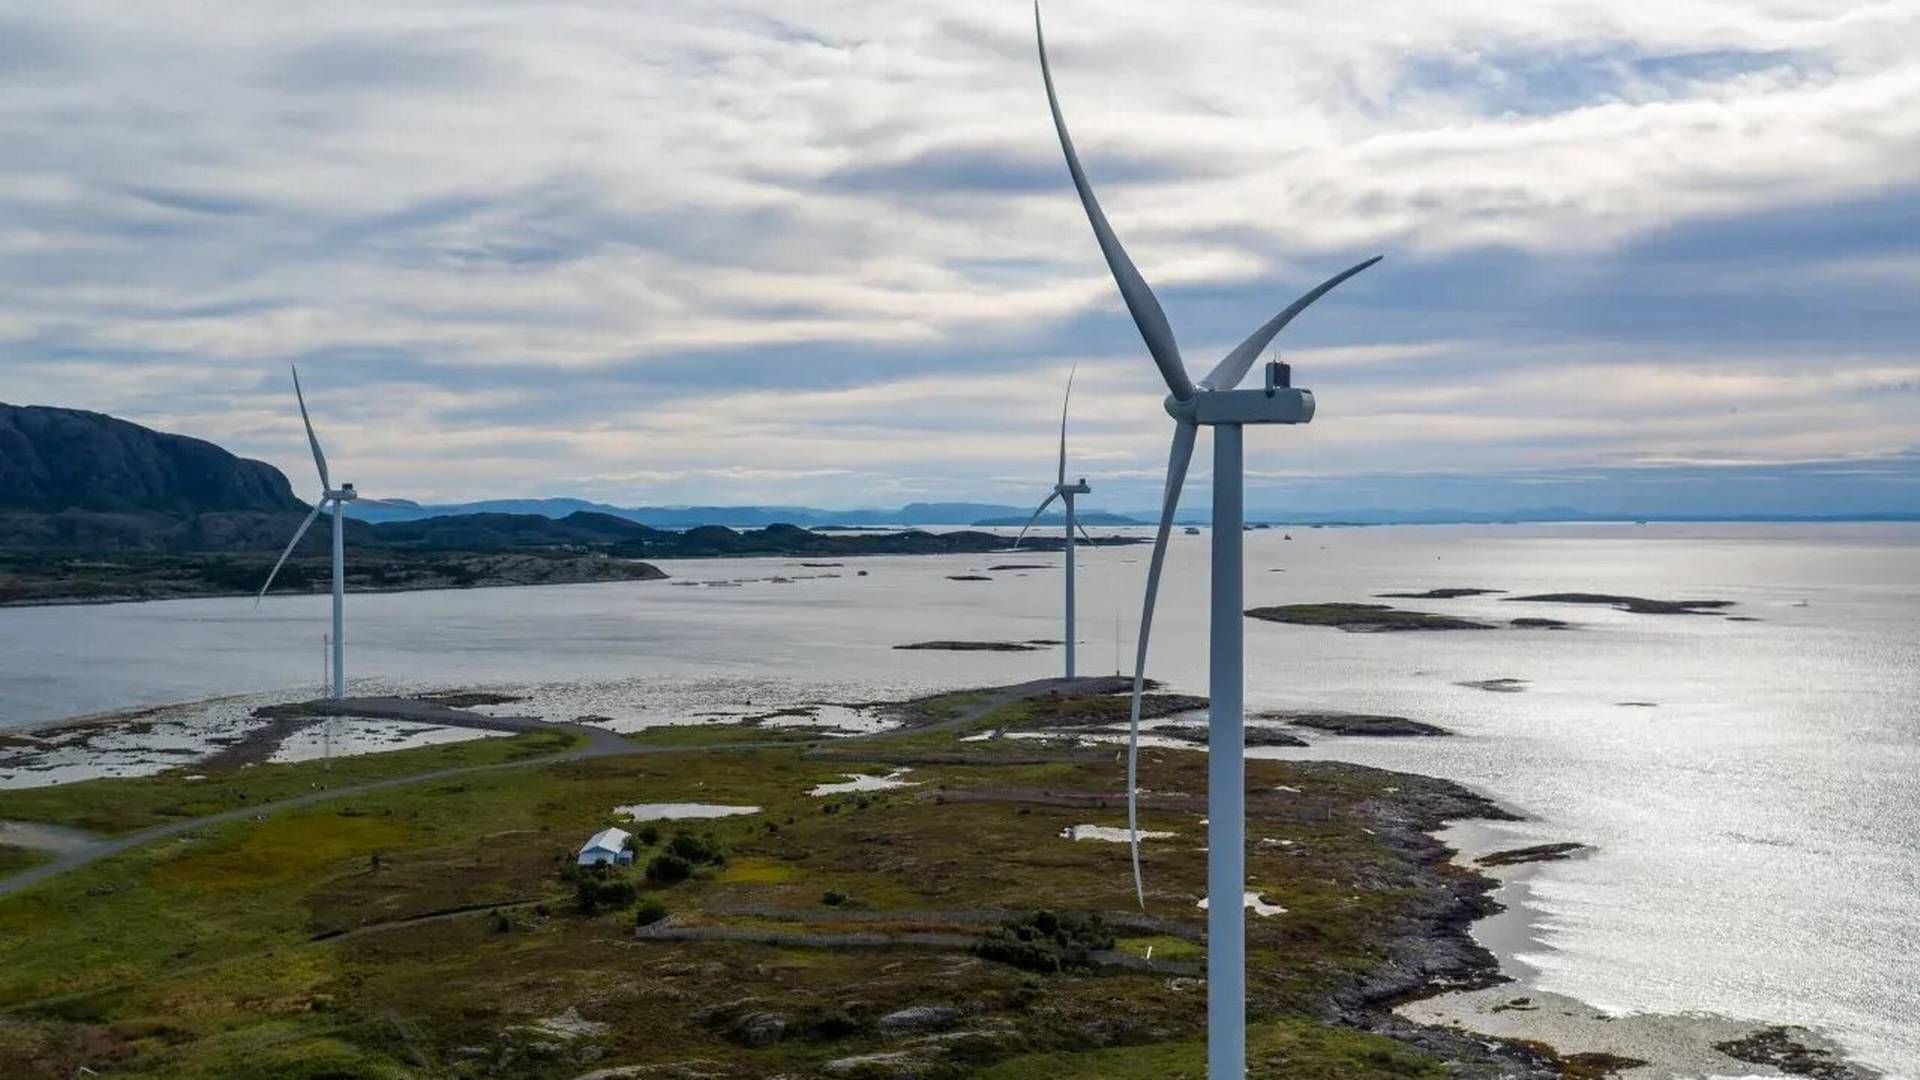 DEN GANG DA: Danske Skovgaard valgte å investerte i vindmøller i Norge da de anså det som et stabilt og trygt land å investere i, med rimelige rammevilkår. Bildet viser tre vindmøller på Valsneset. | Foto: Greenstat